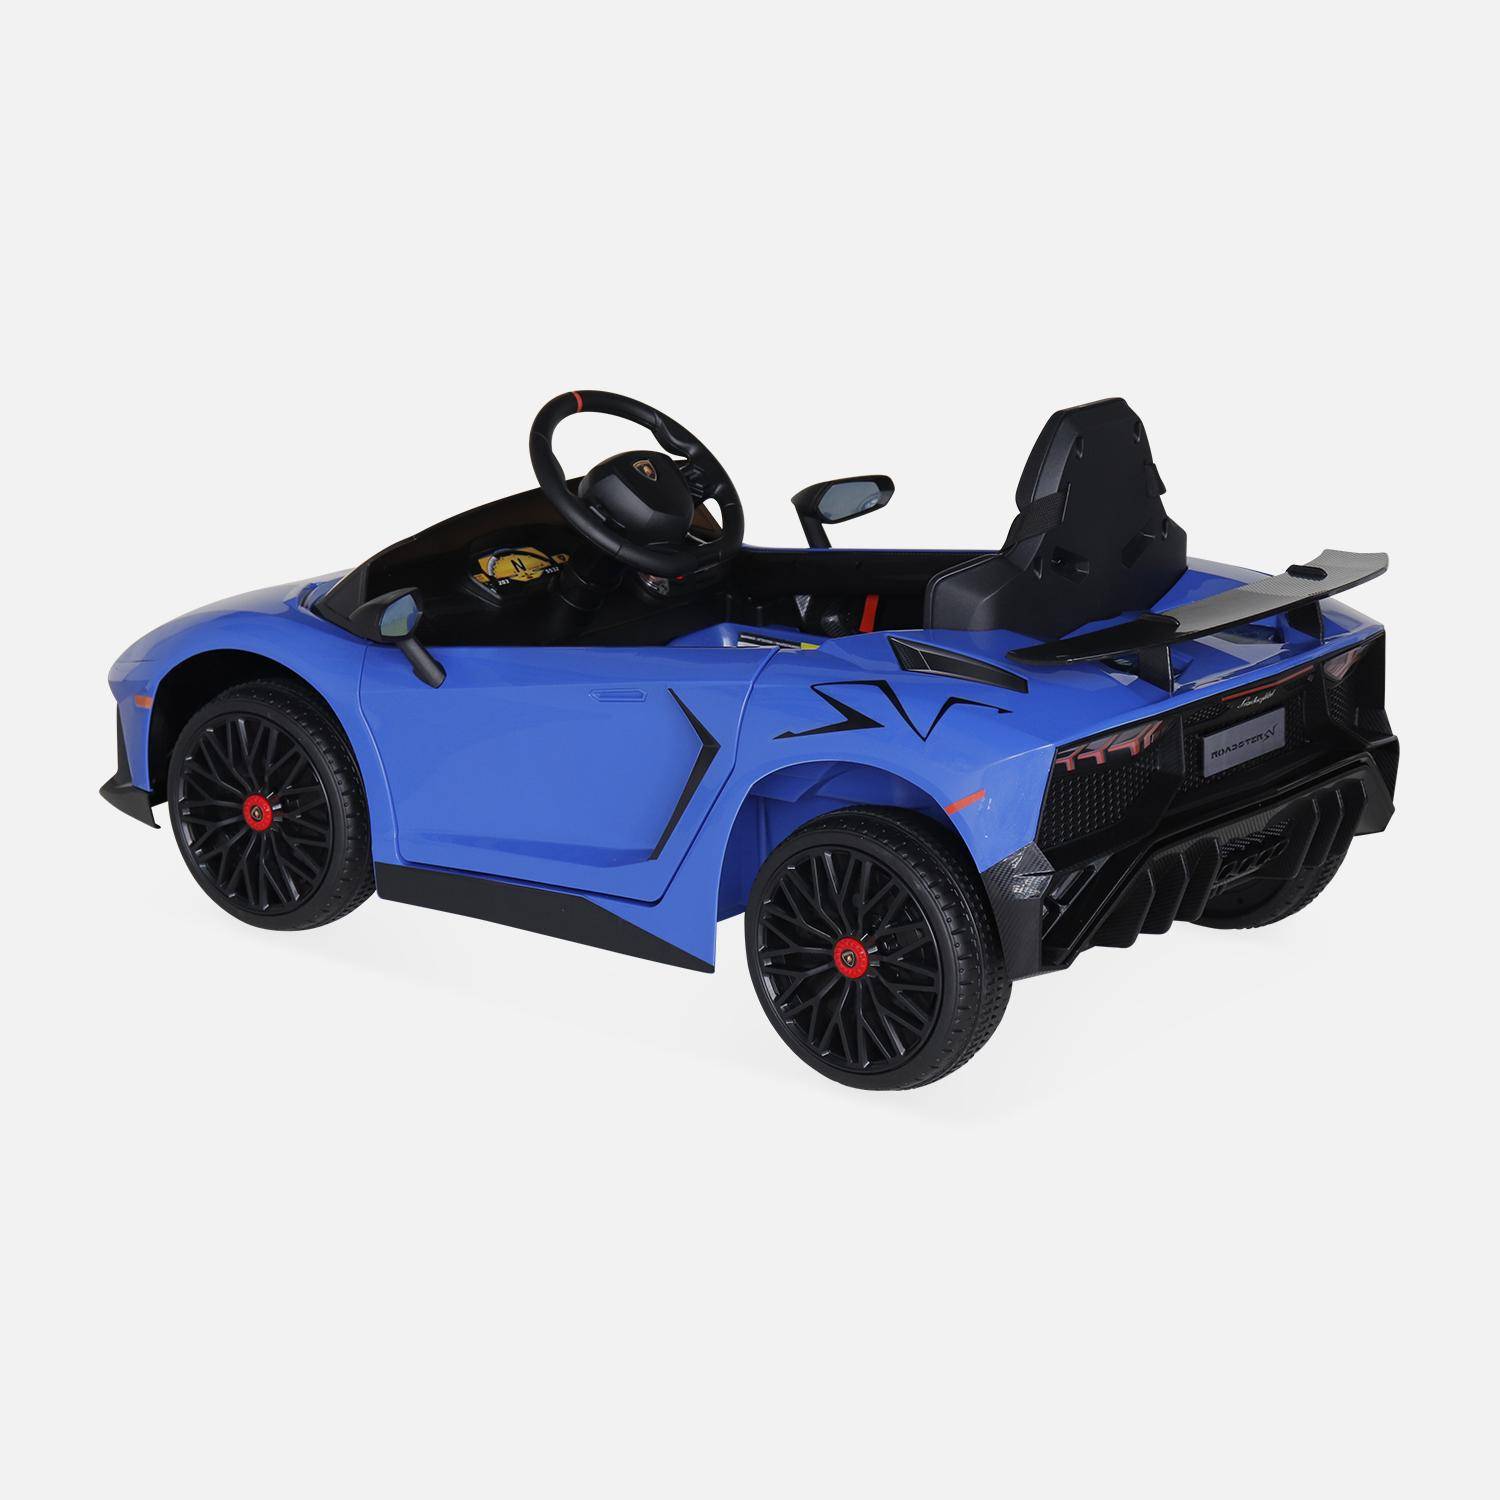 Voiture électrique 12V pour enfant Lamborghini, bleu, 1 place, avec autoradio, télécommande, MP3, port USB et phares fonctionnels Photo4